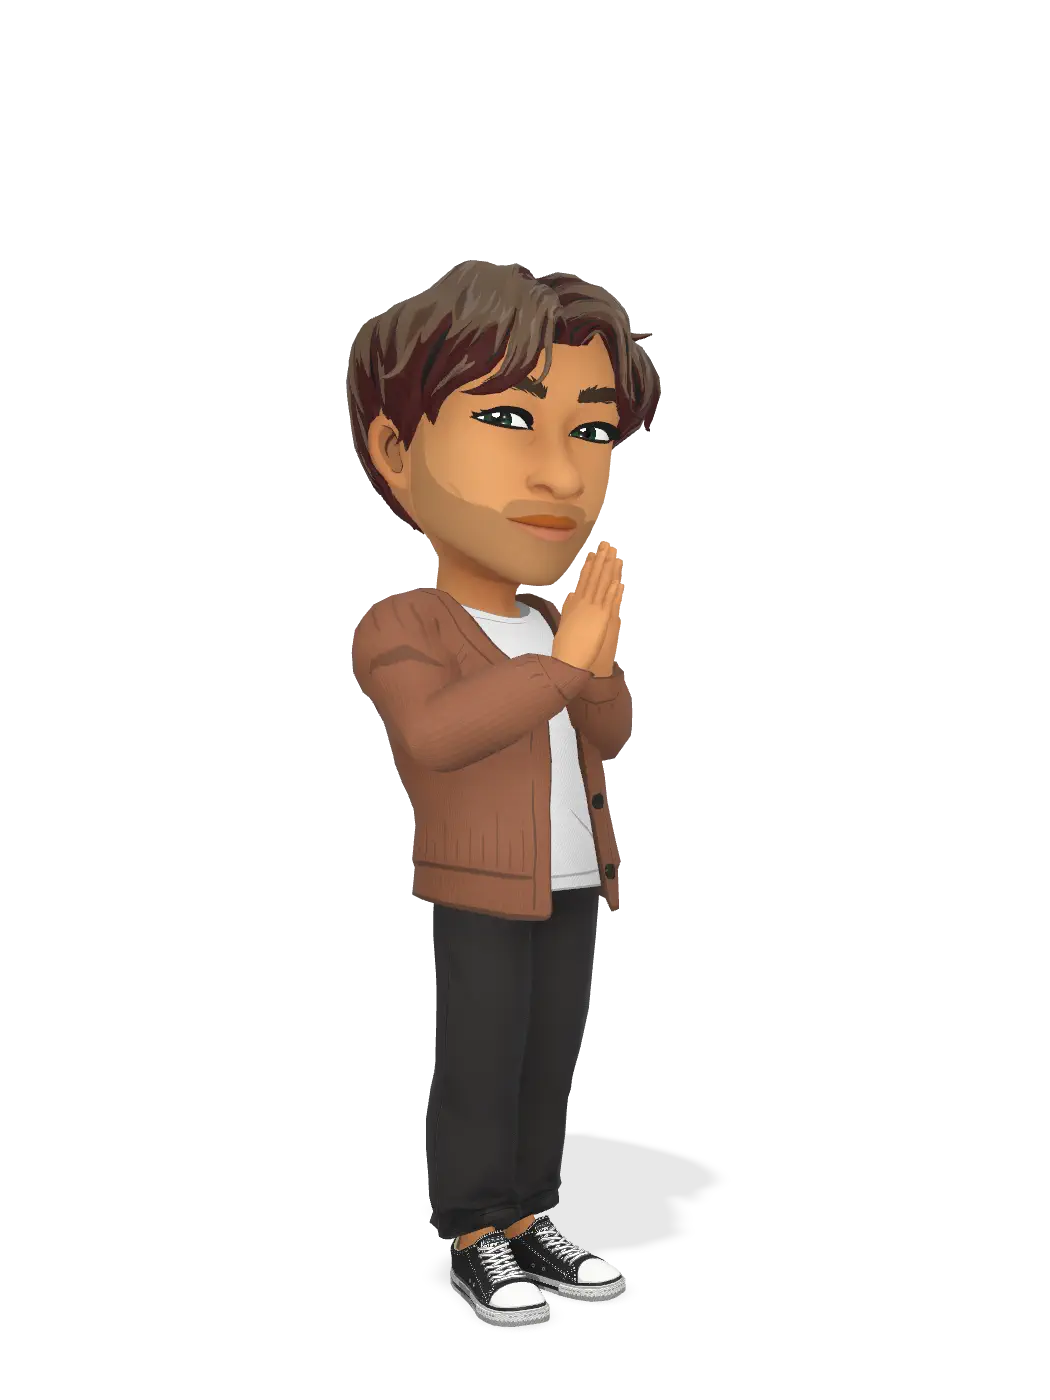 3D Bitmoji for pjkowalik avatar